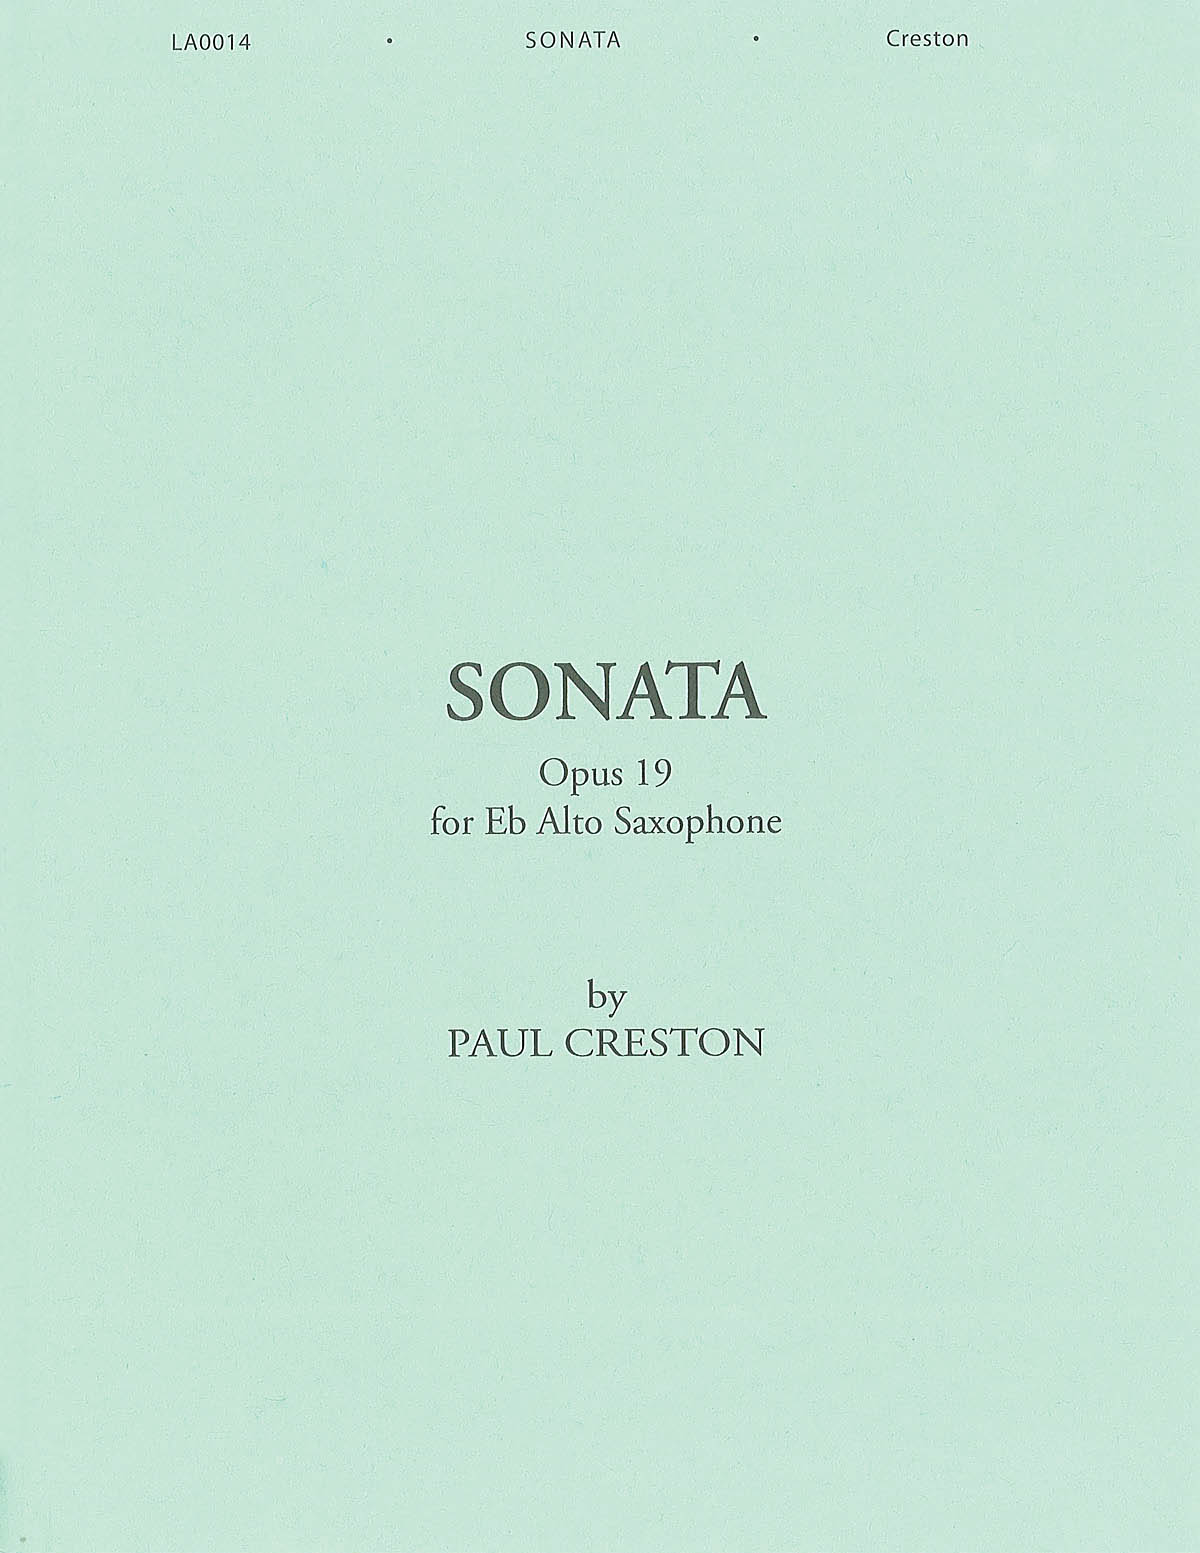 Paul Creston: Sonata For Alto Saxophone And Piano Op.19